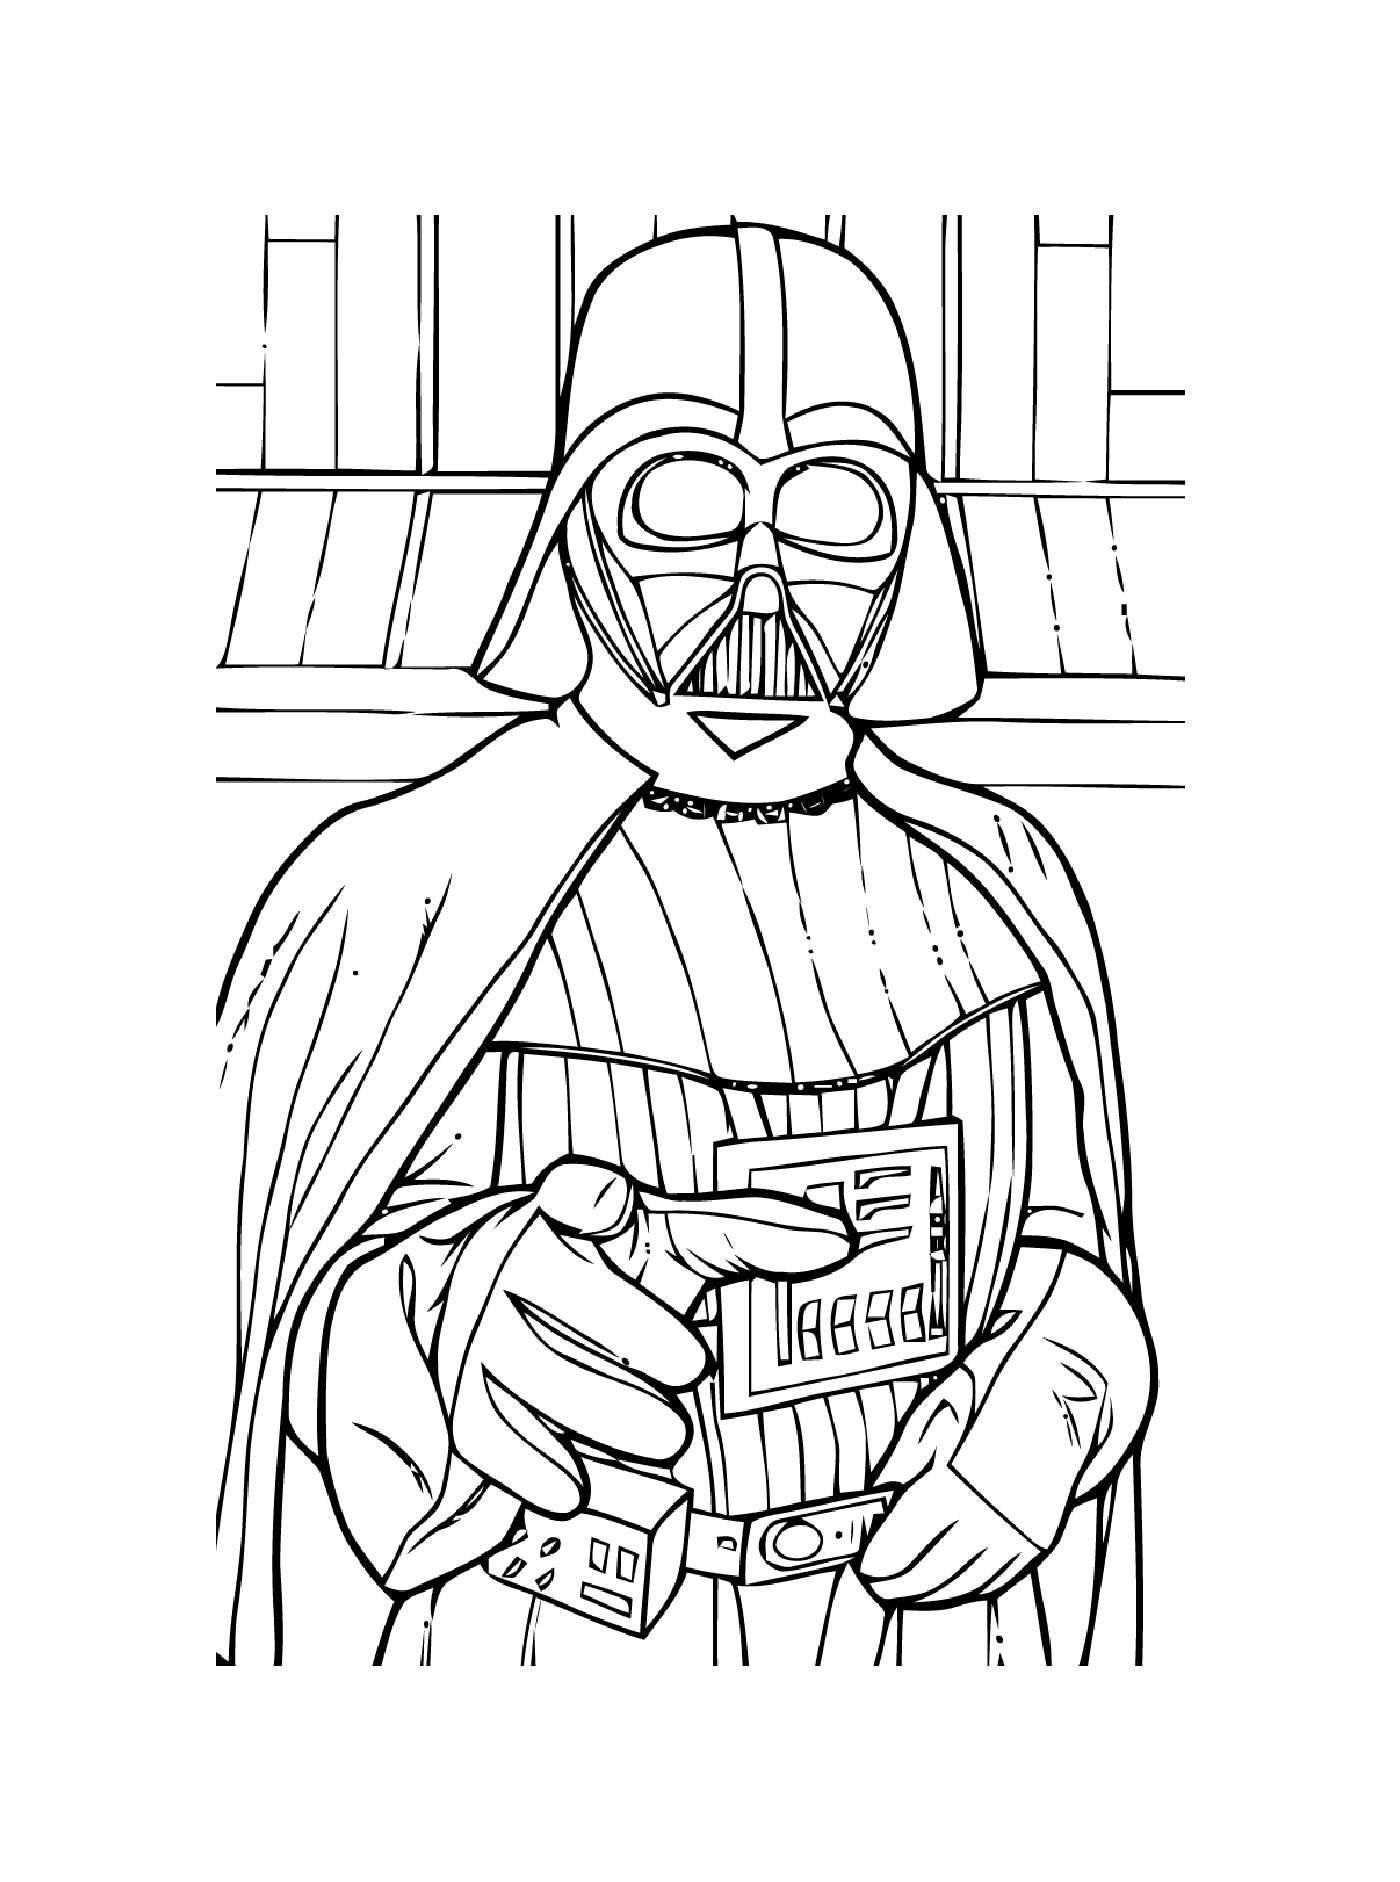  Dark Vader vuole parlarti 